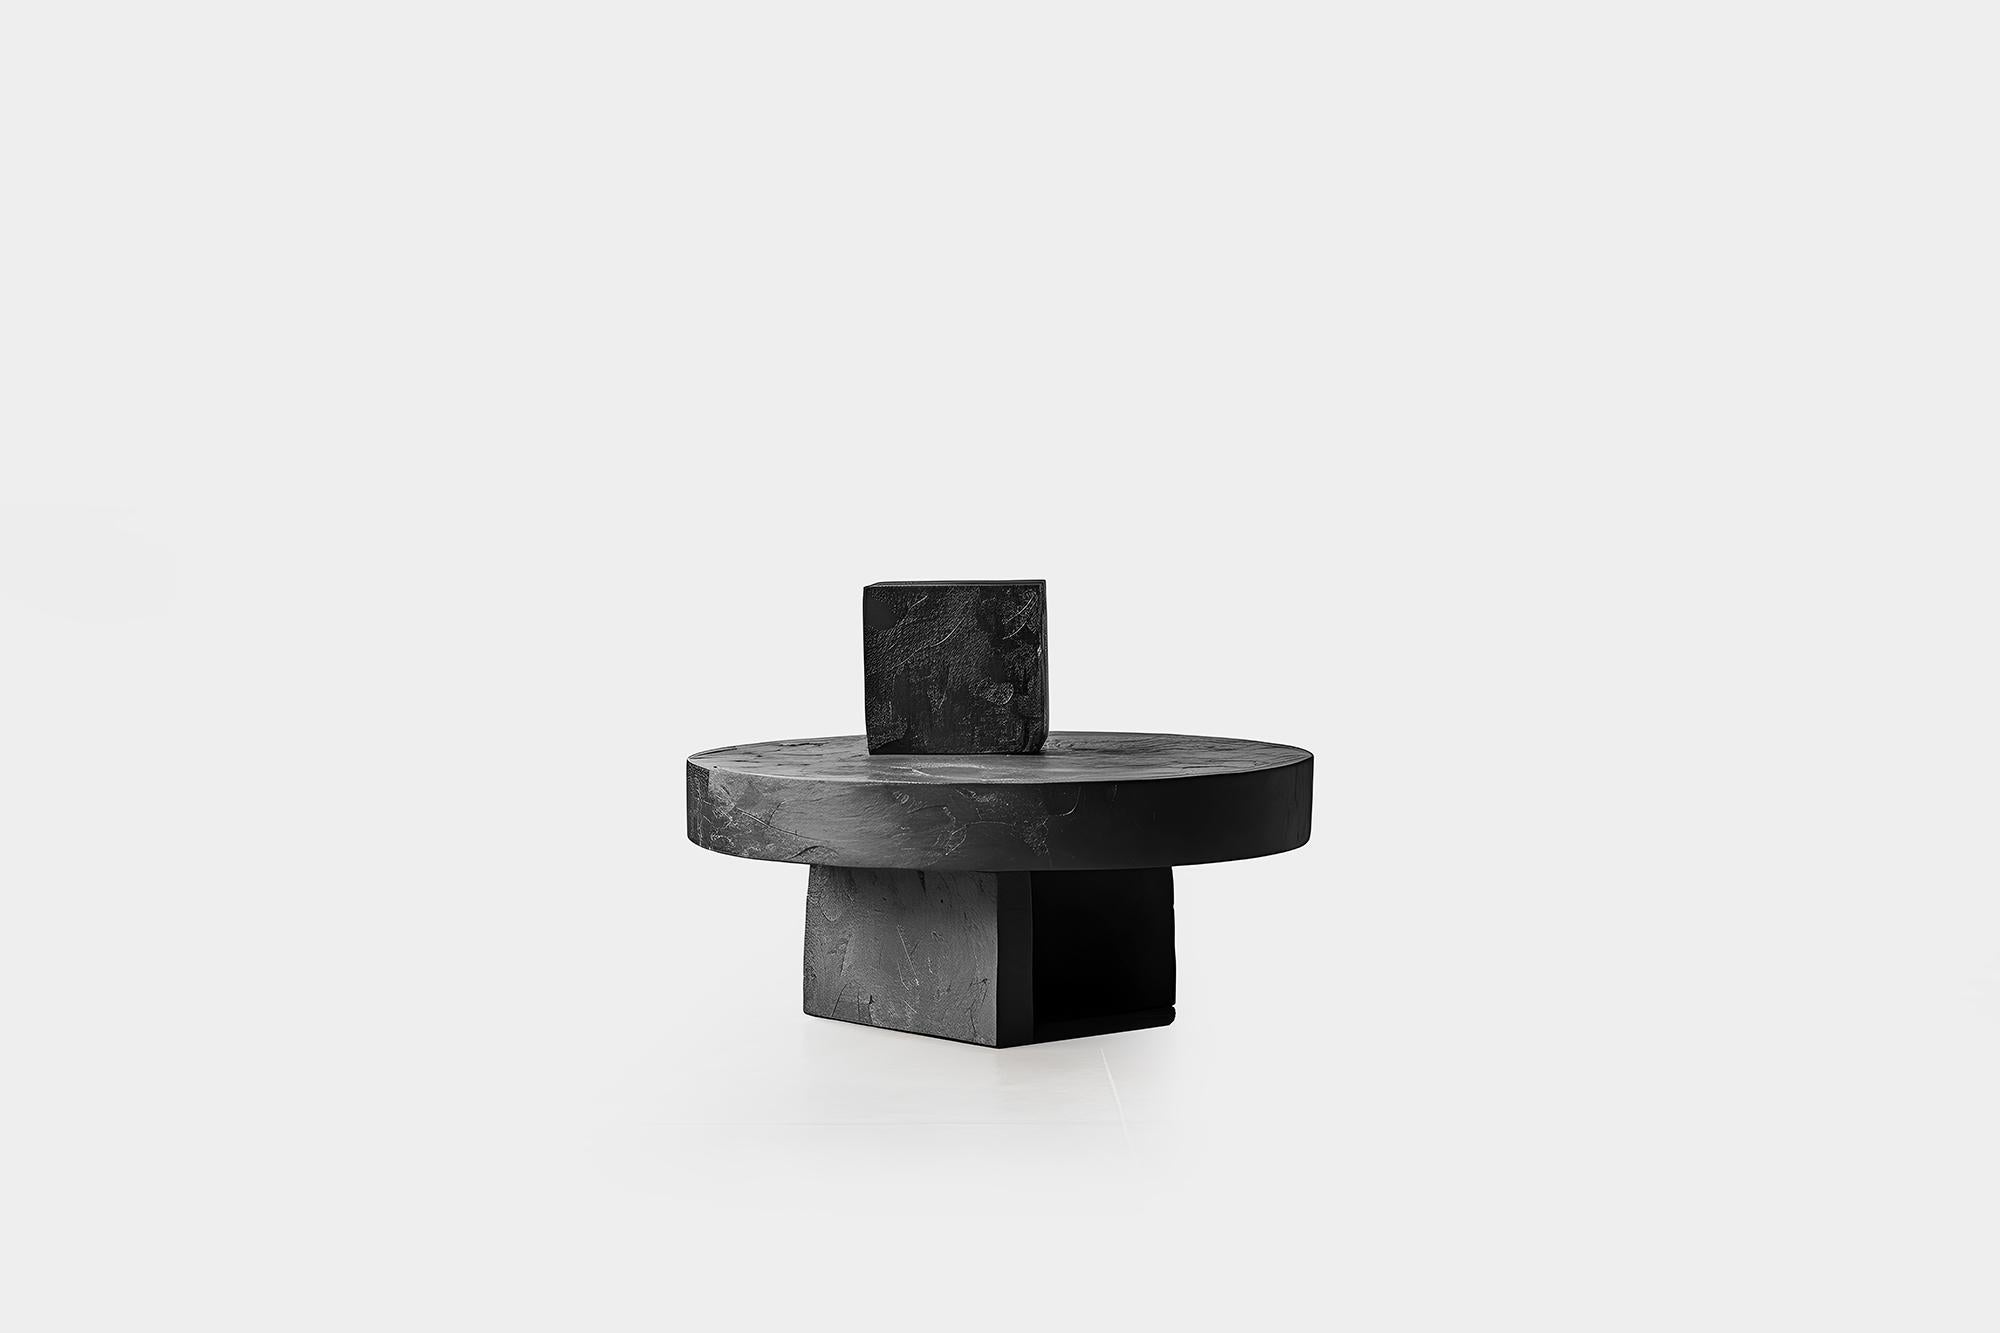 La force invisible de Joel Escalona n°49 : sculpture en bois massif, table d'art


Table basse sculpturale en bois massif avec une finition naturelle à base d'eau ou carbonisée. En raison de la nature du processus de production, chaque pièce peut